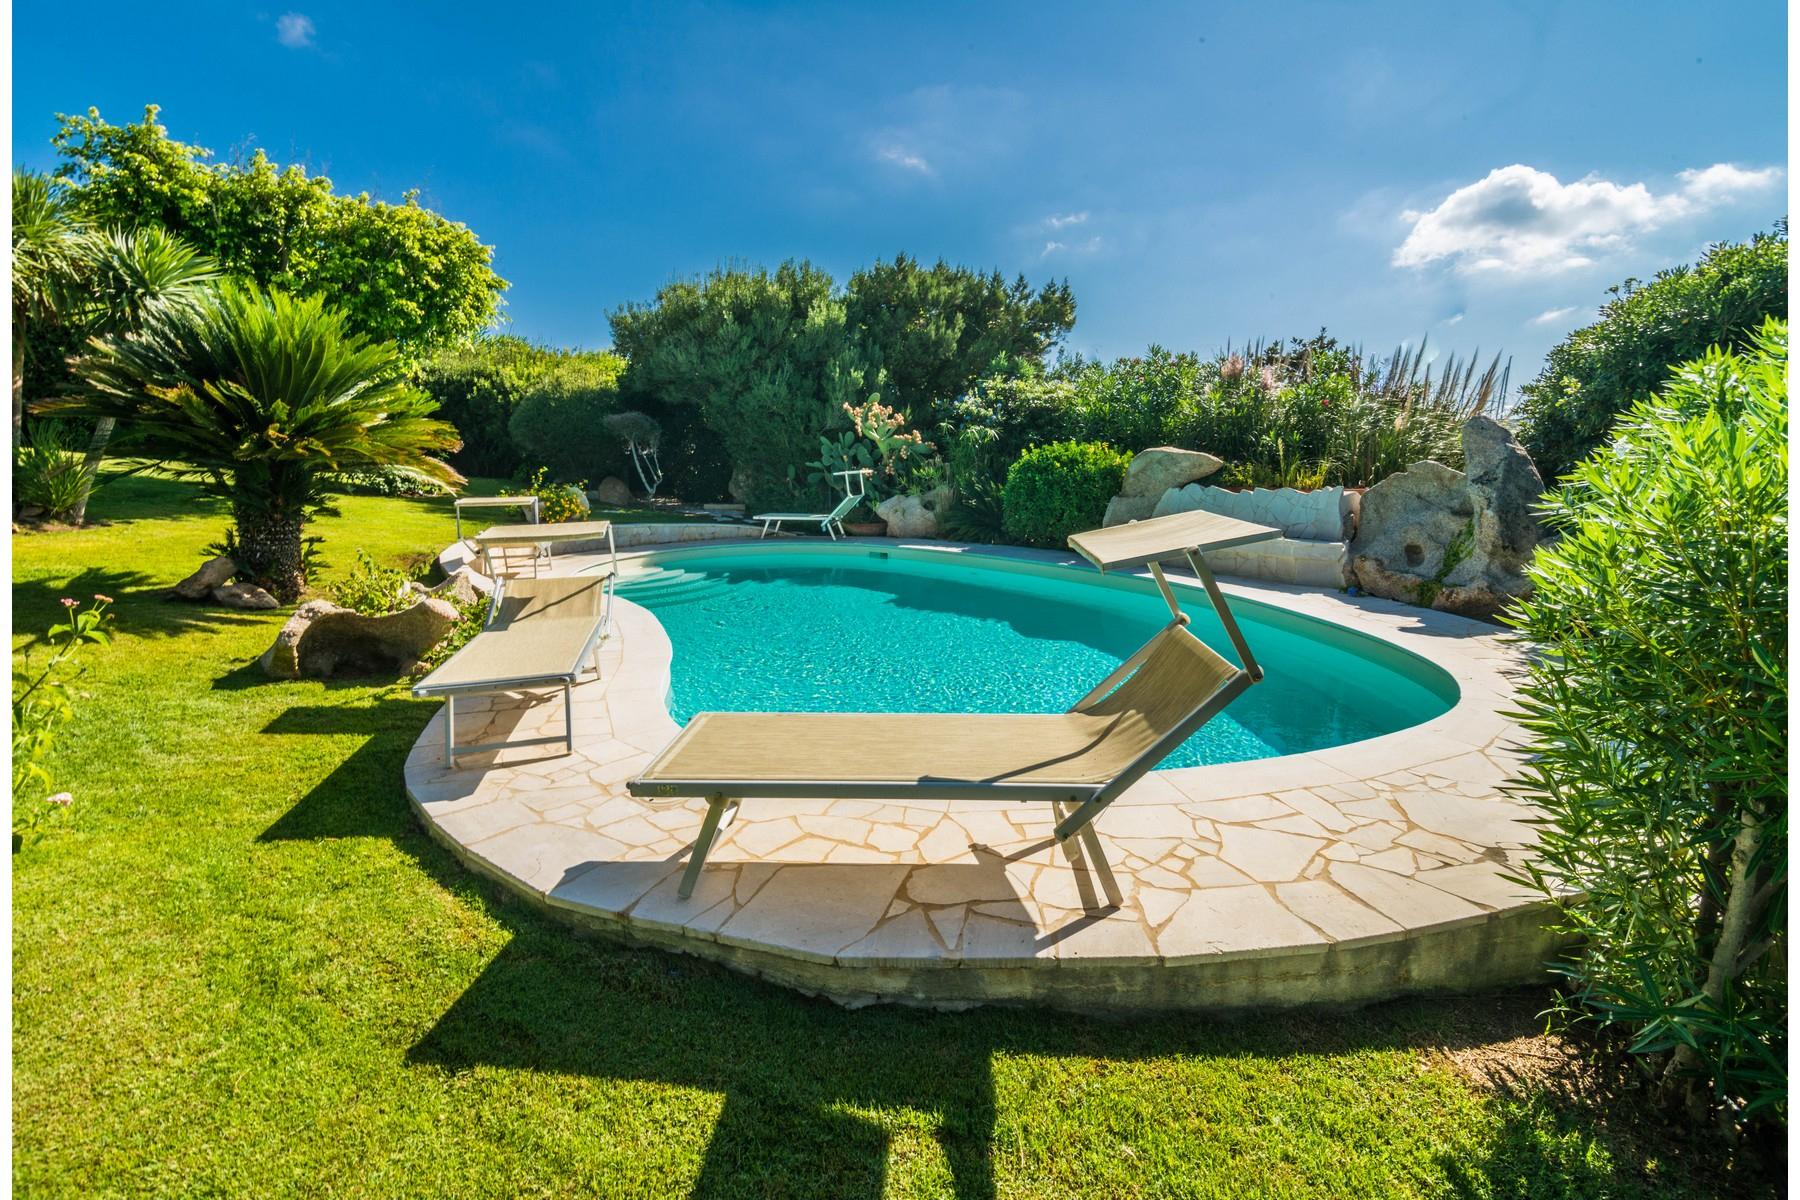 Porto Cervo Marina - Magnificient Villa with private pool - 2